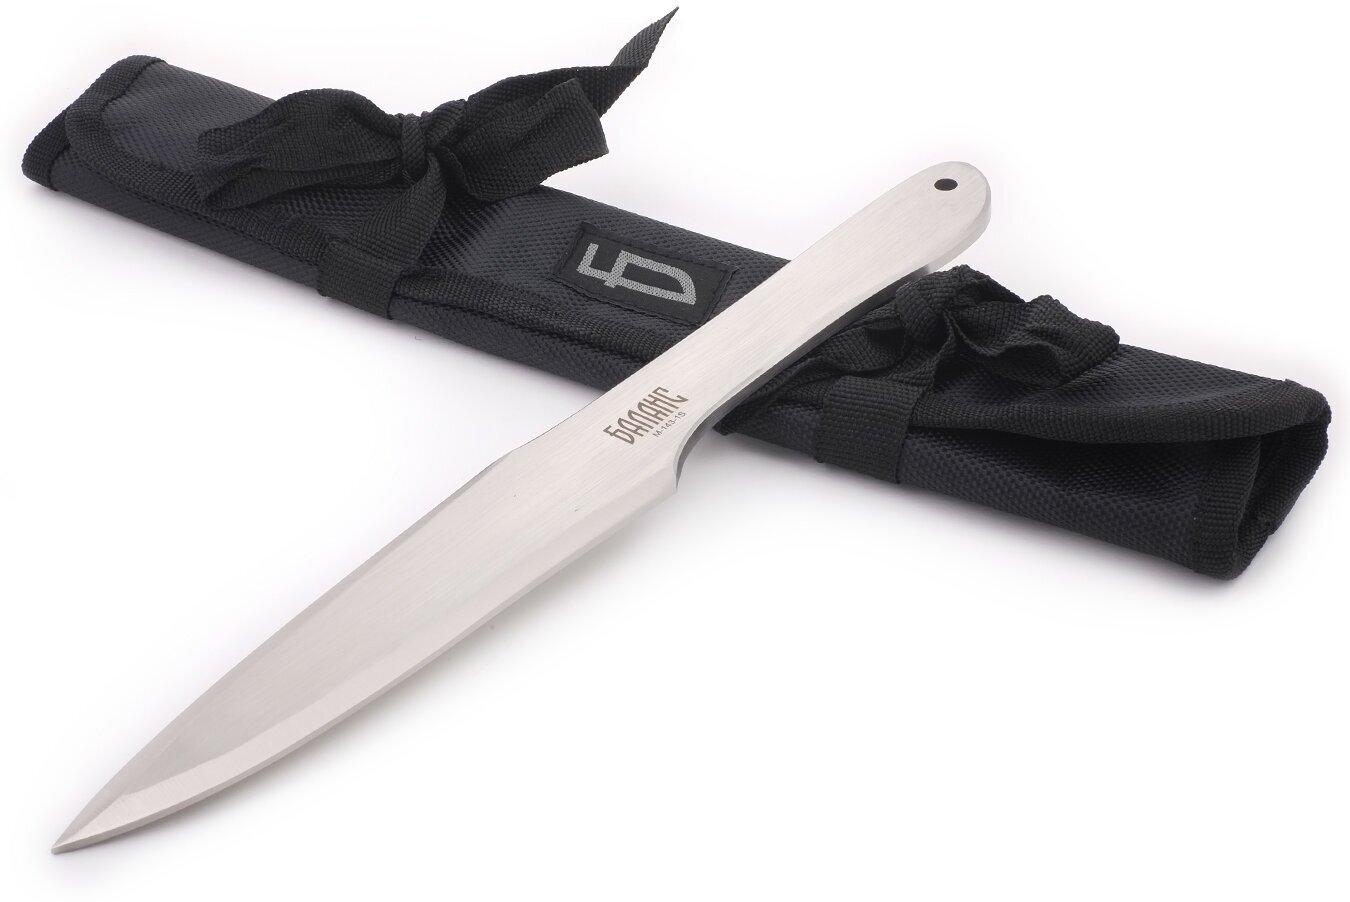 Нож спортивный Ножемир Баланс M-143-1S в чехле свертке